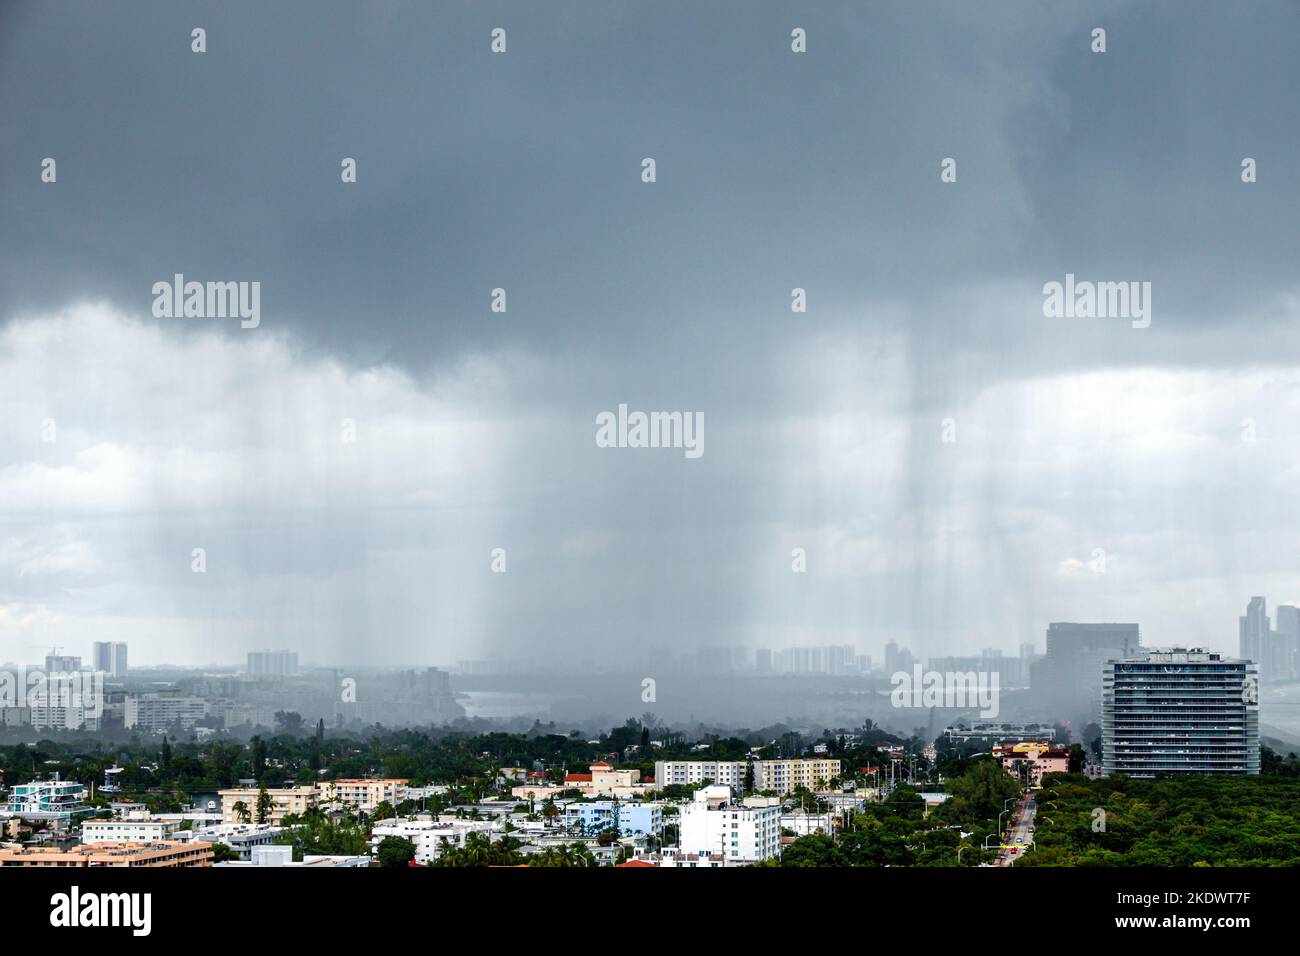 Miami Beach Florida, North Shore Historic District, Wetter starker Regensturm Regen Sturm stürmische Wolken Regenguss dunkelgrau Wolken, Klimawandel globa Stockfoto